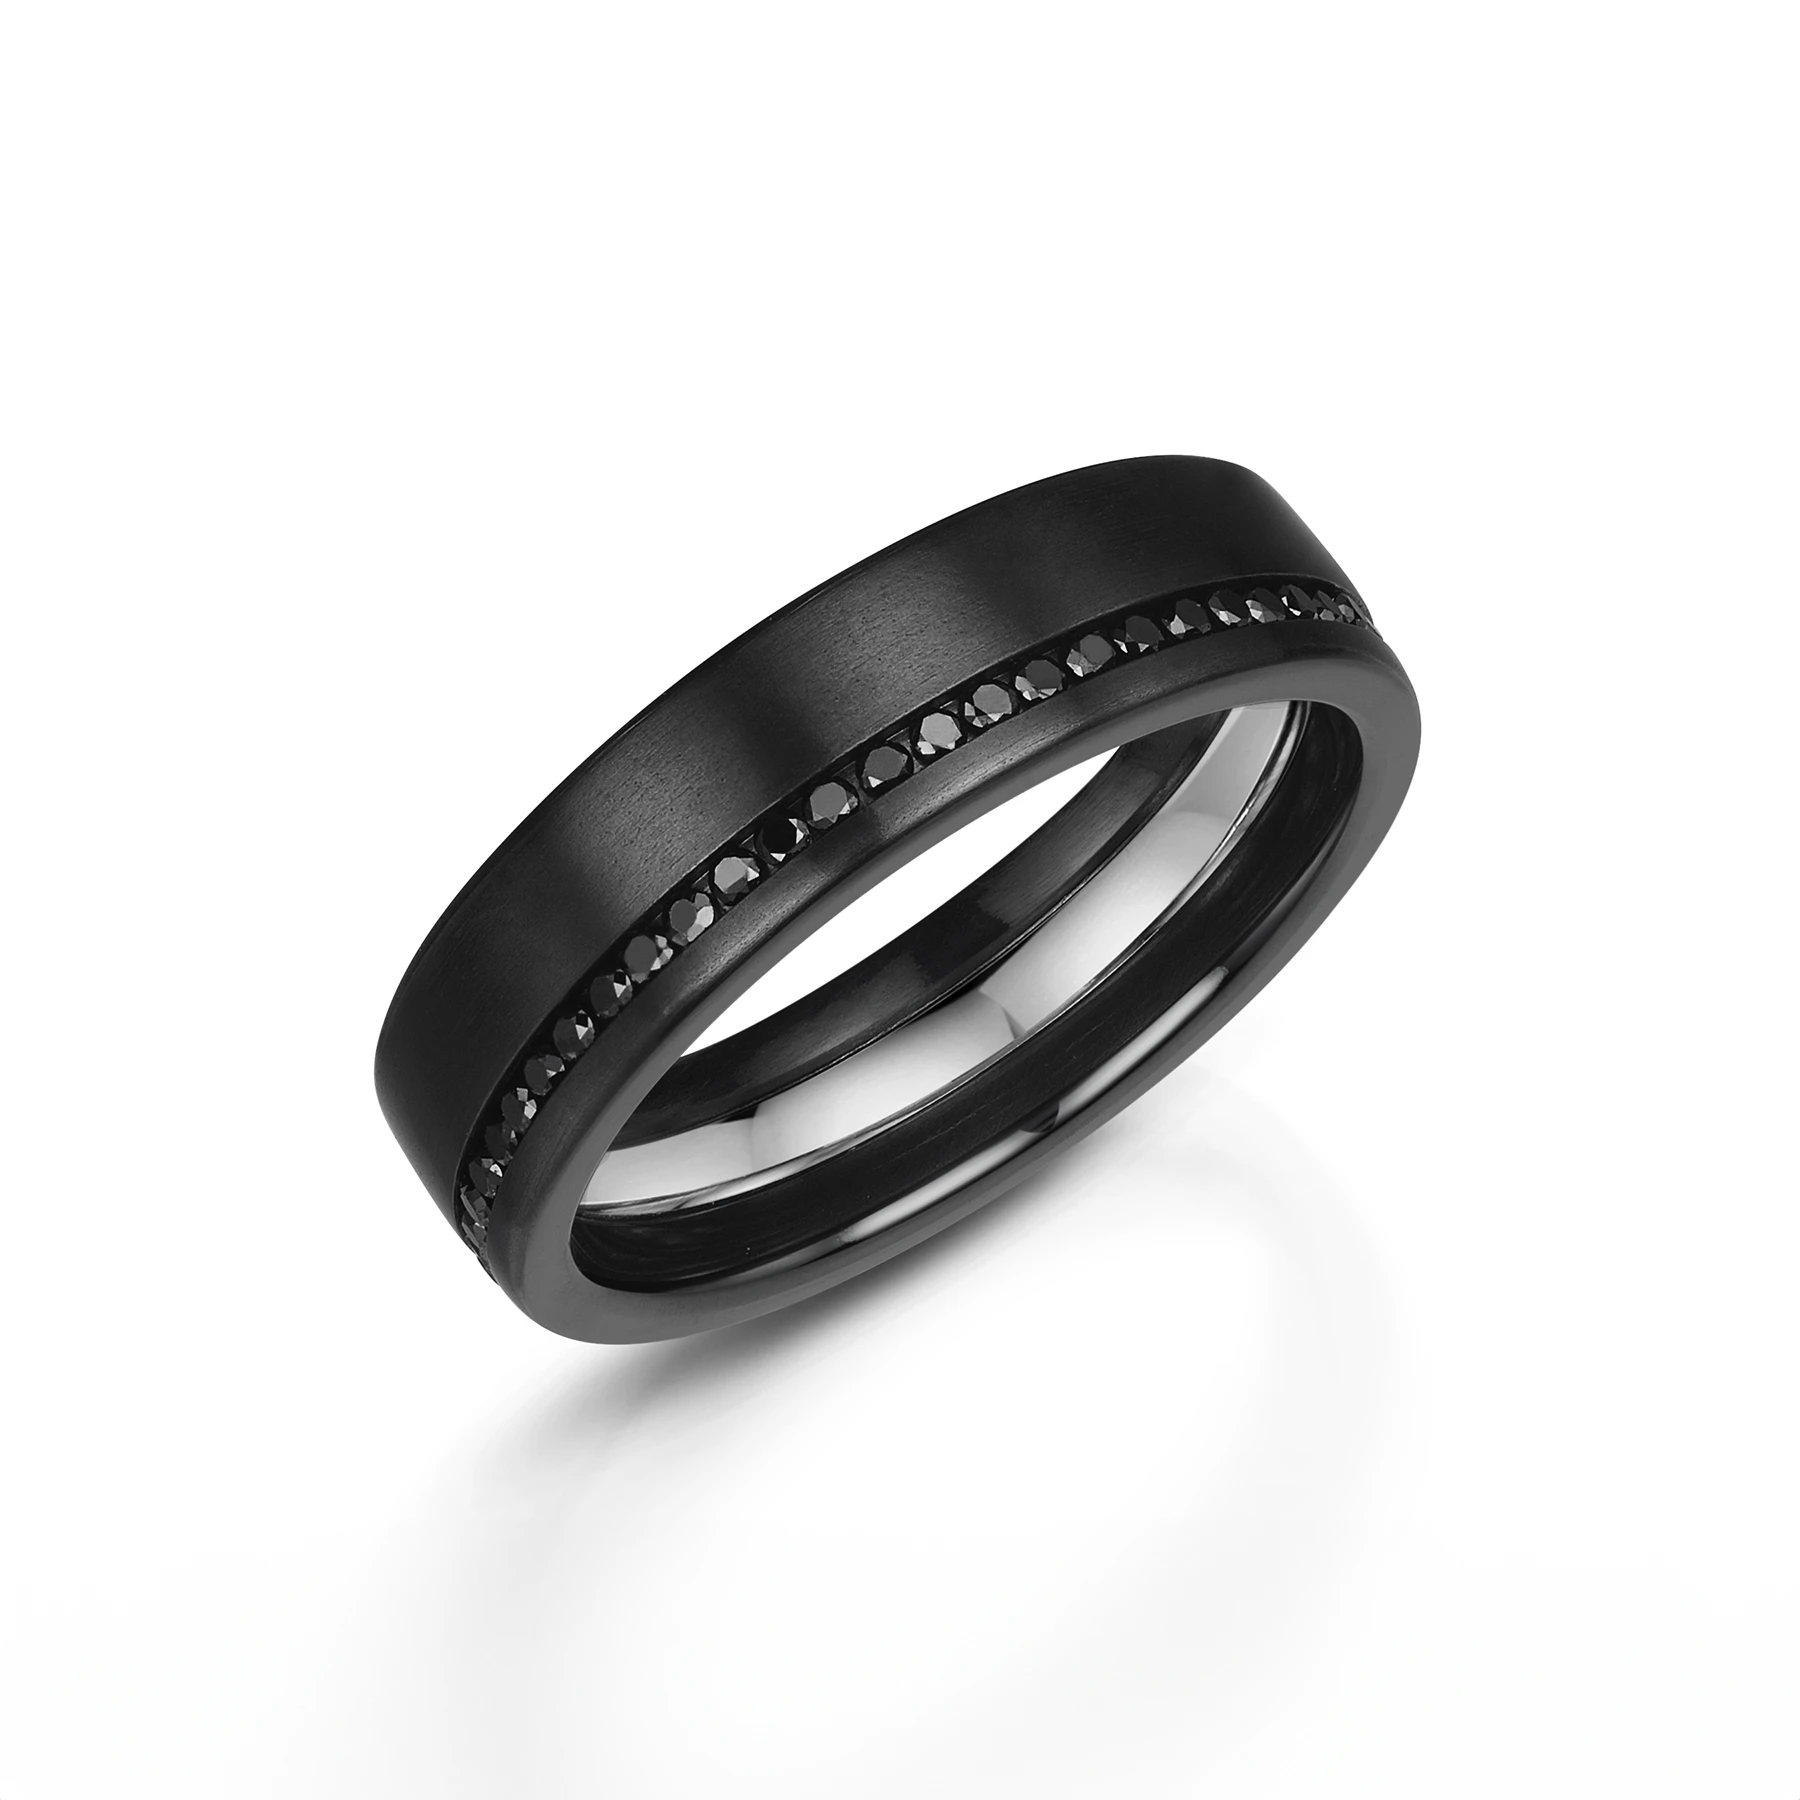 Black Diamond & Zirconium Wedding Ring - Full Set